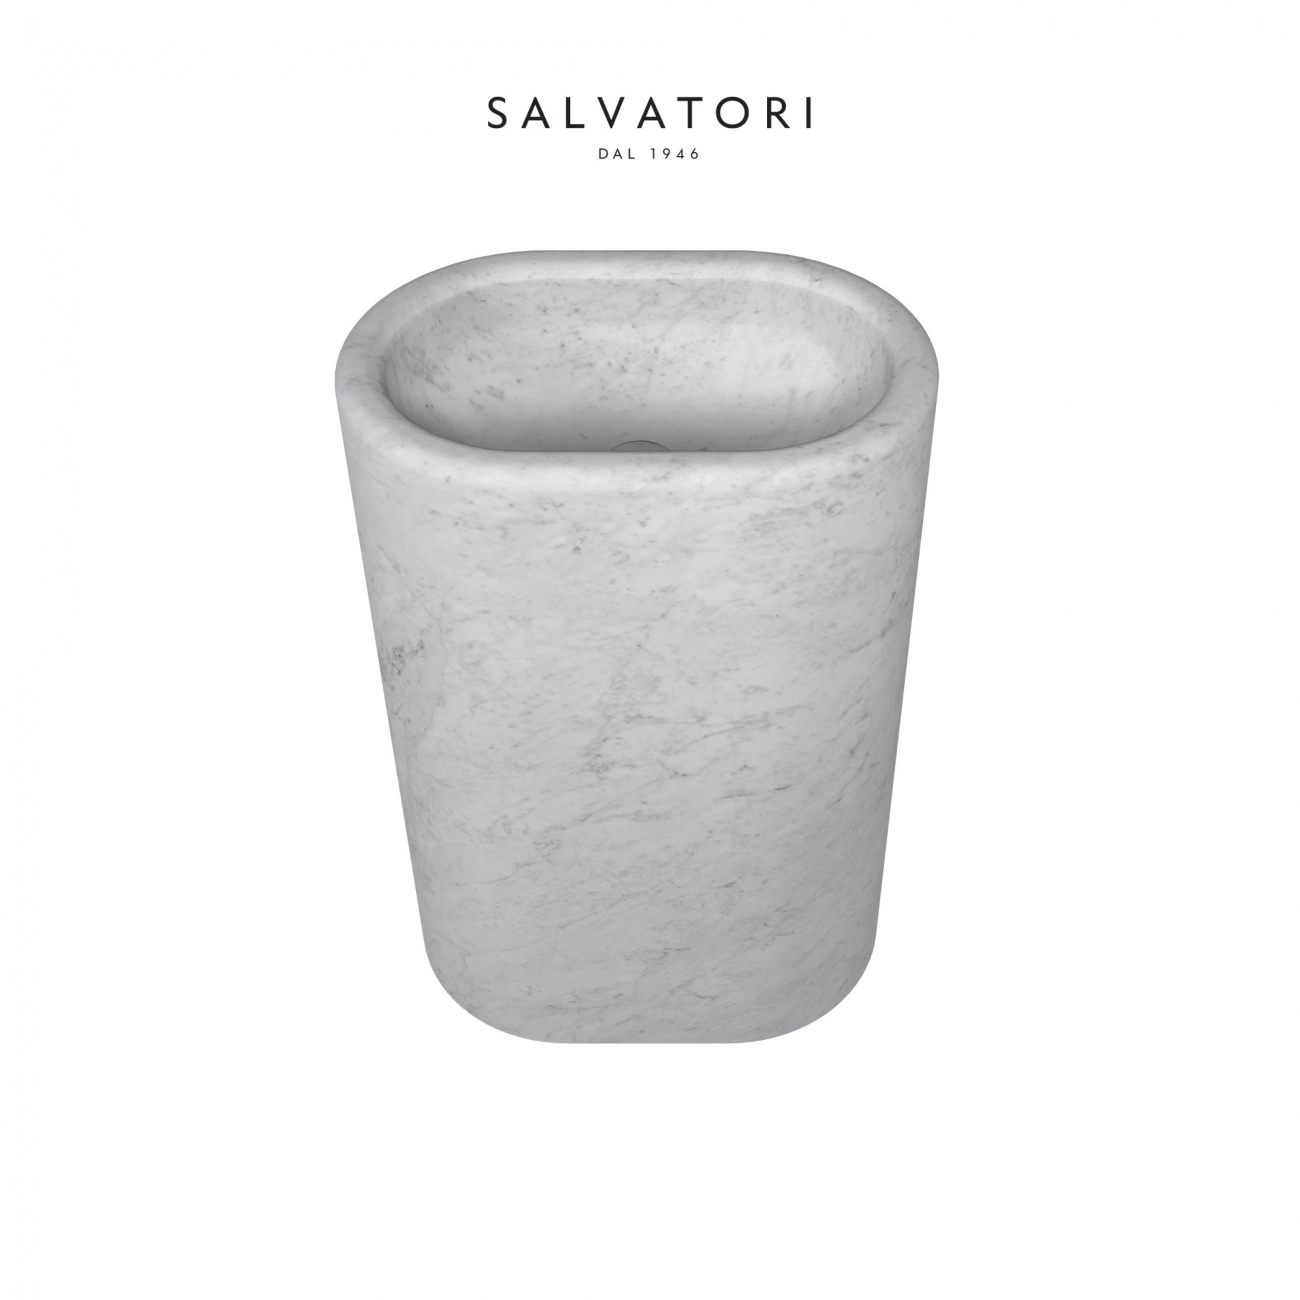 Salvatori Balnea Lavabo Freestanding